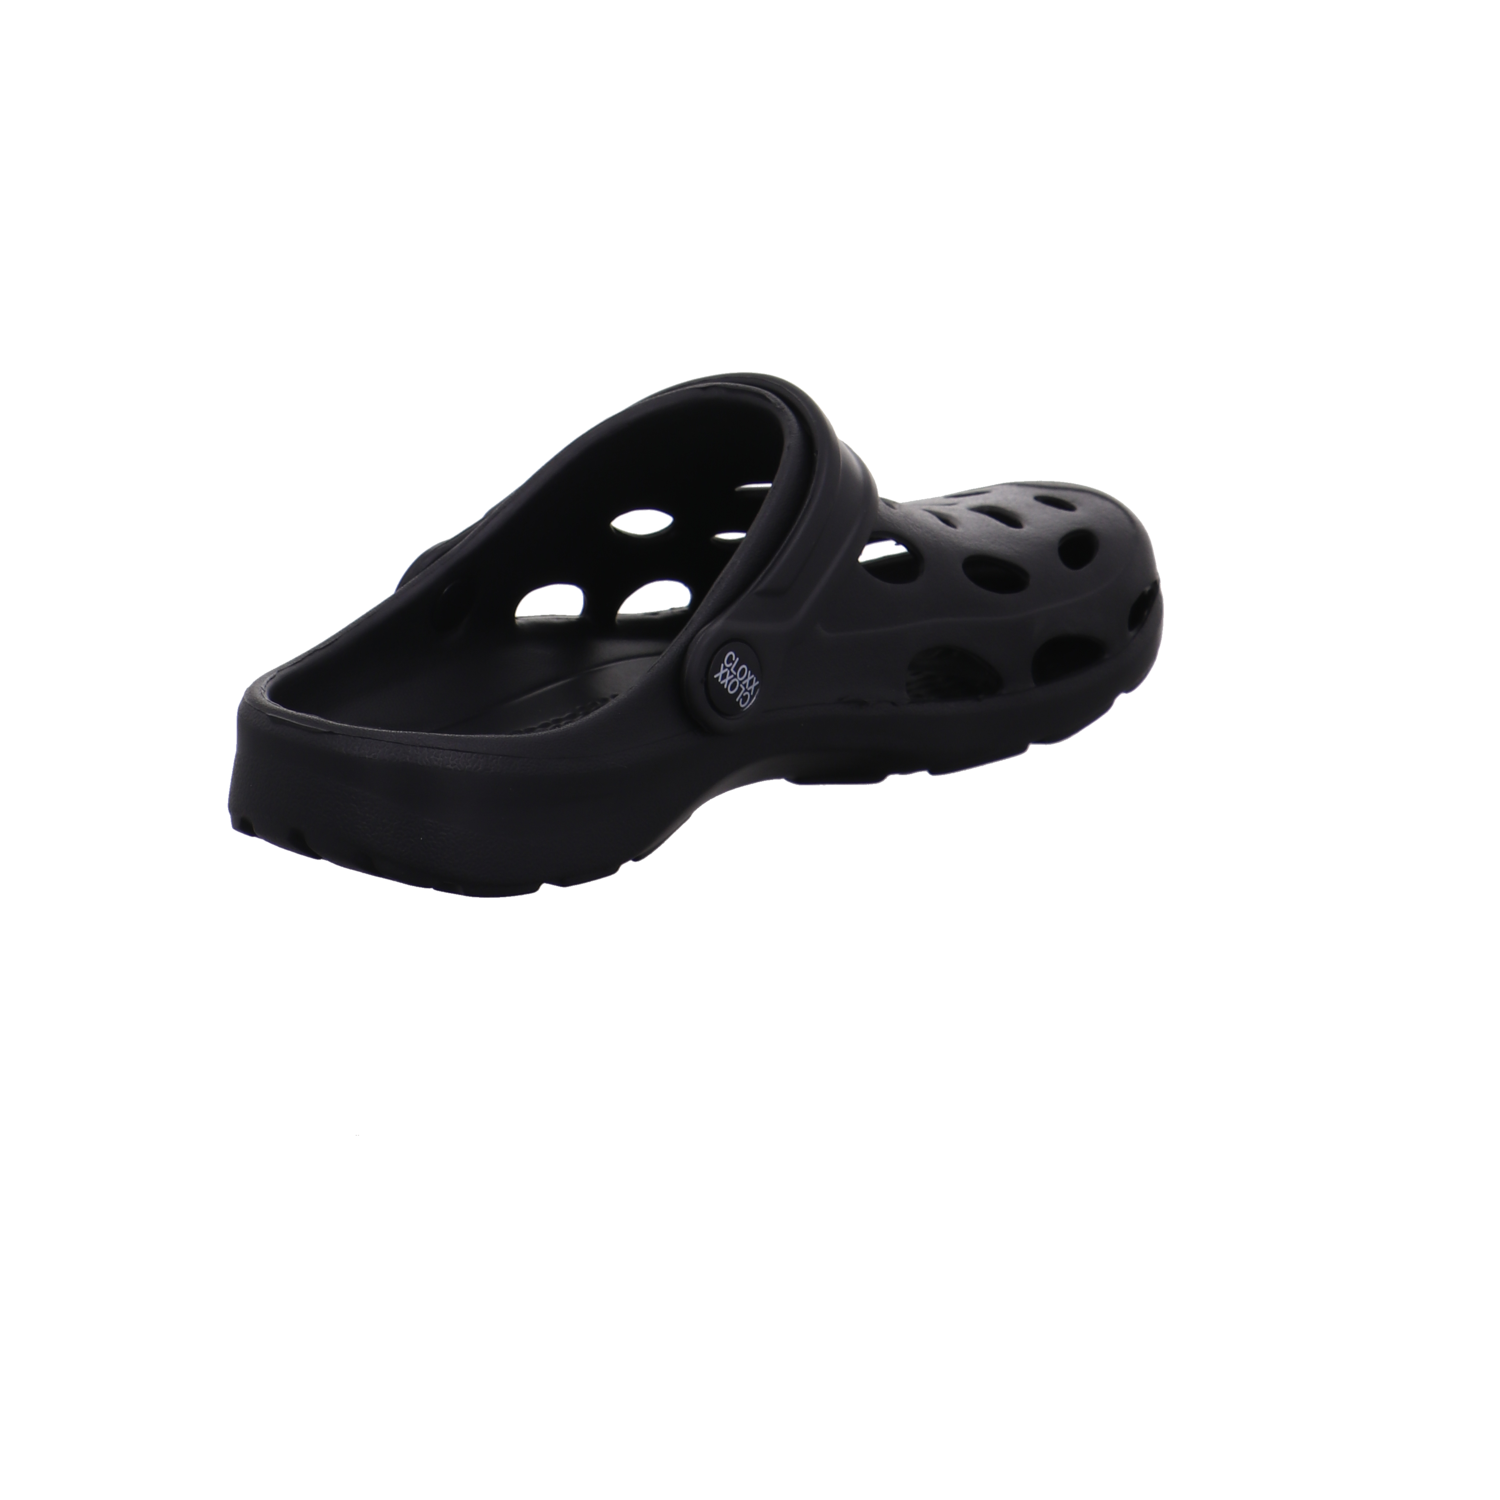 Cloxx Schuhe  schwarz Bild5